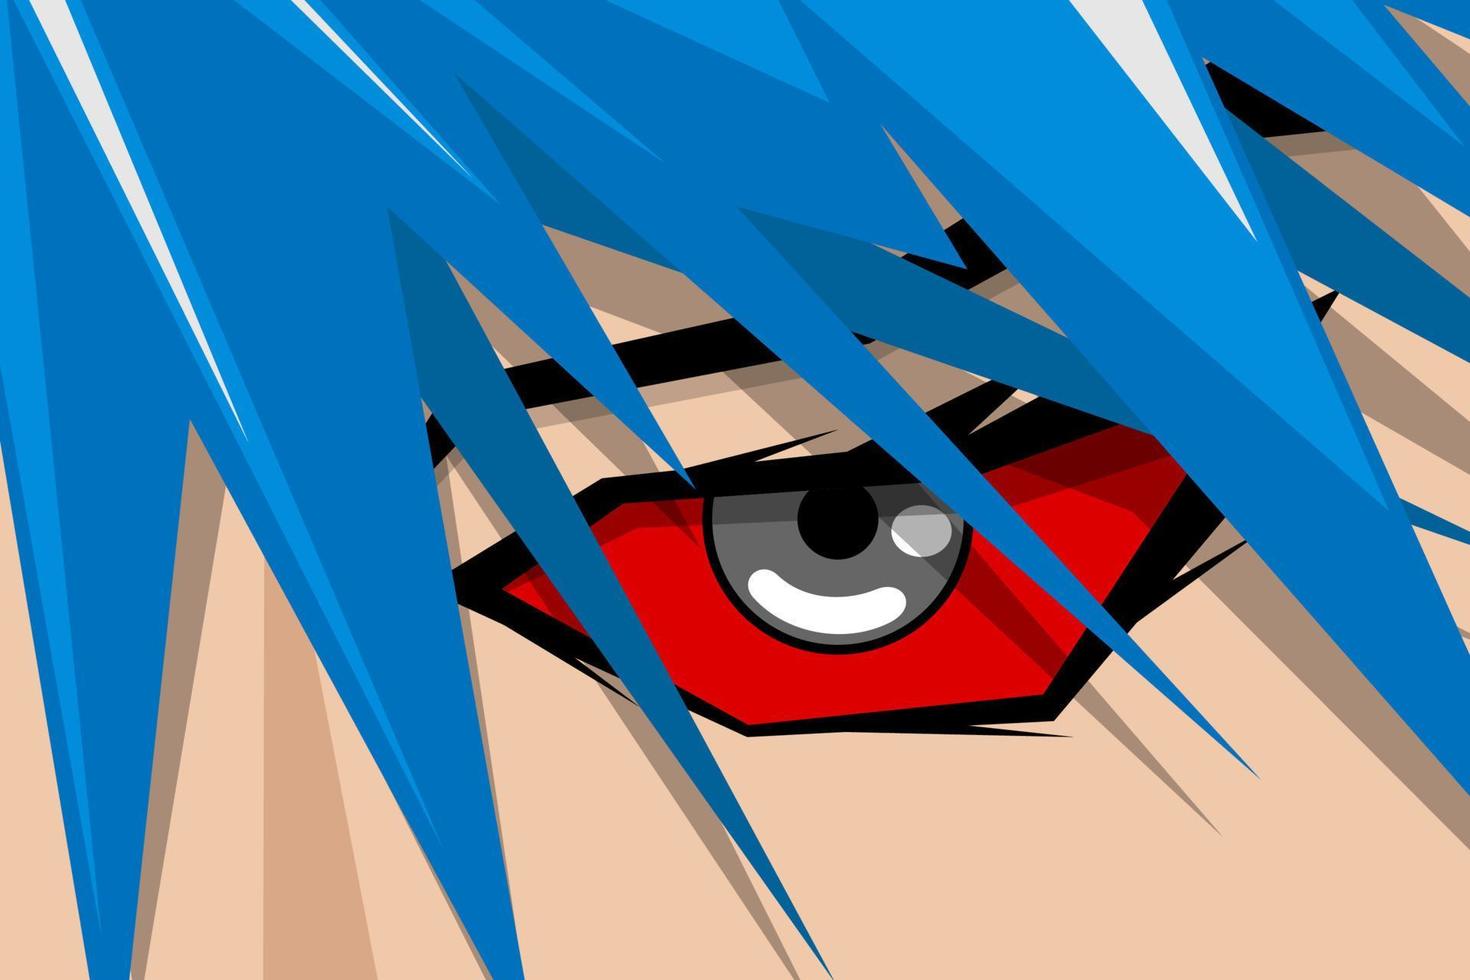 tira cómica de anime bonita cara de niño o niña con ojos rojos y cabello azul. concepto de fondo de arte de héroe de libro de historietas de manga. ilustración vectorial de aspecto de dibujos animados eps vector